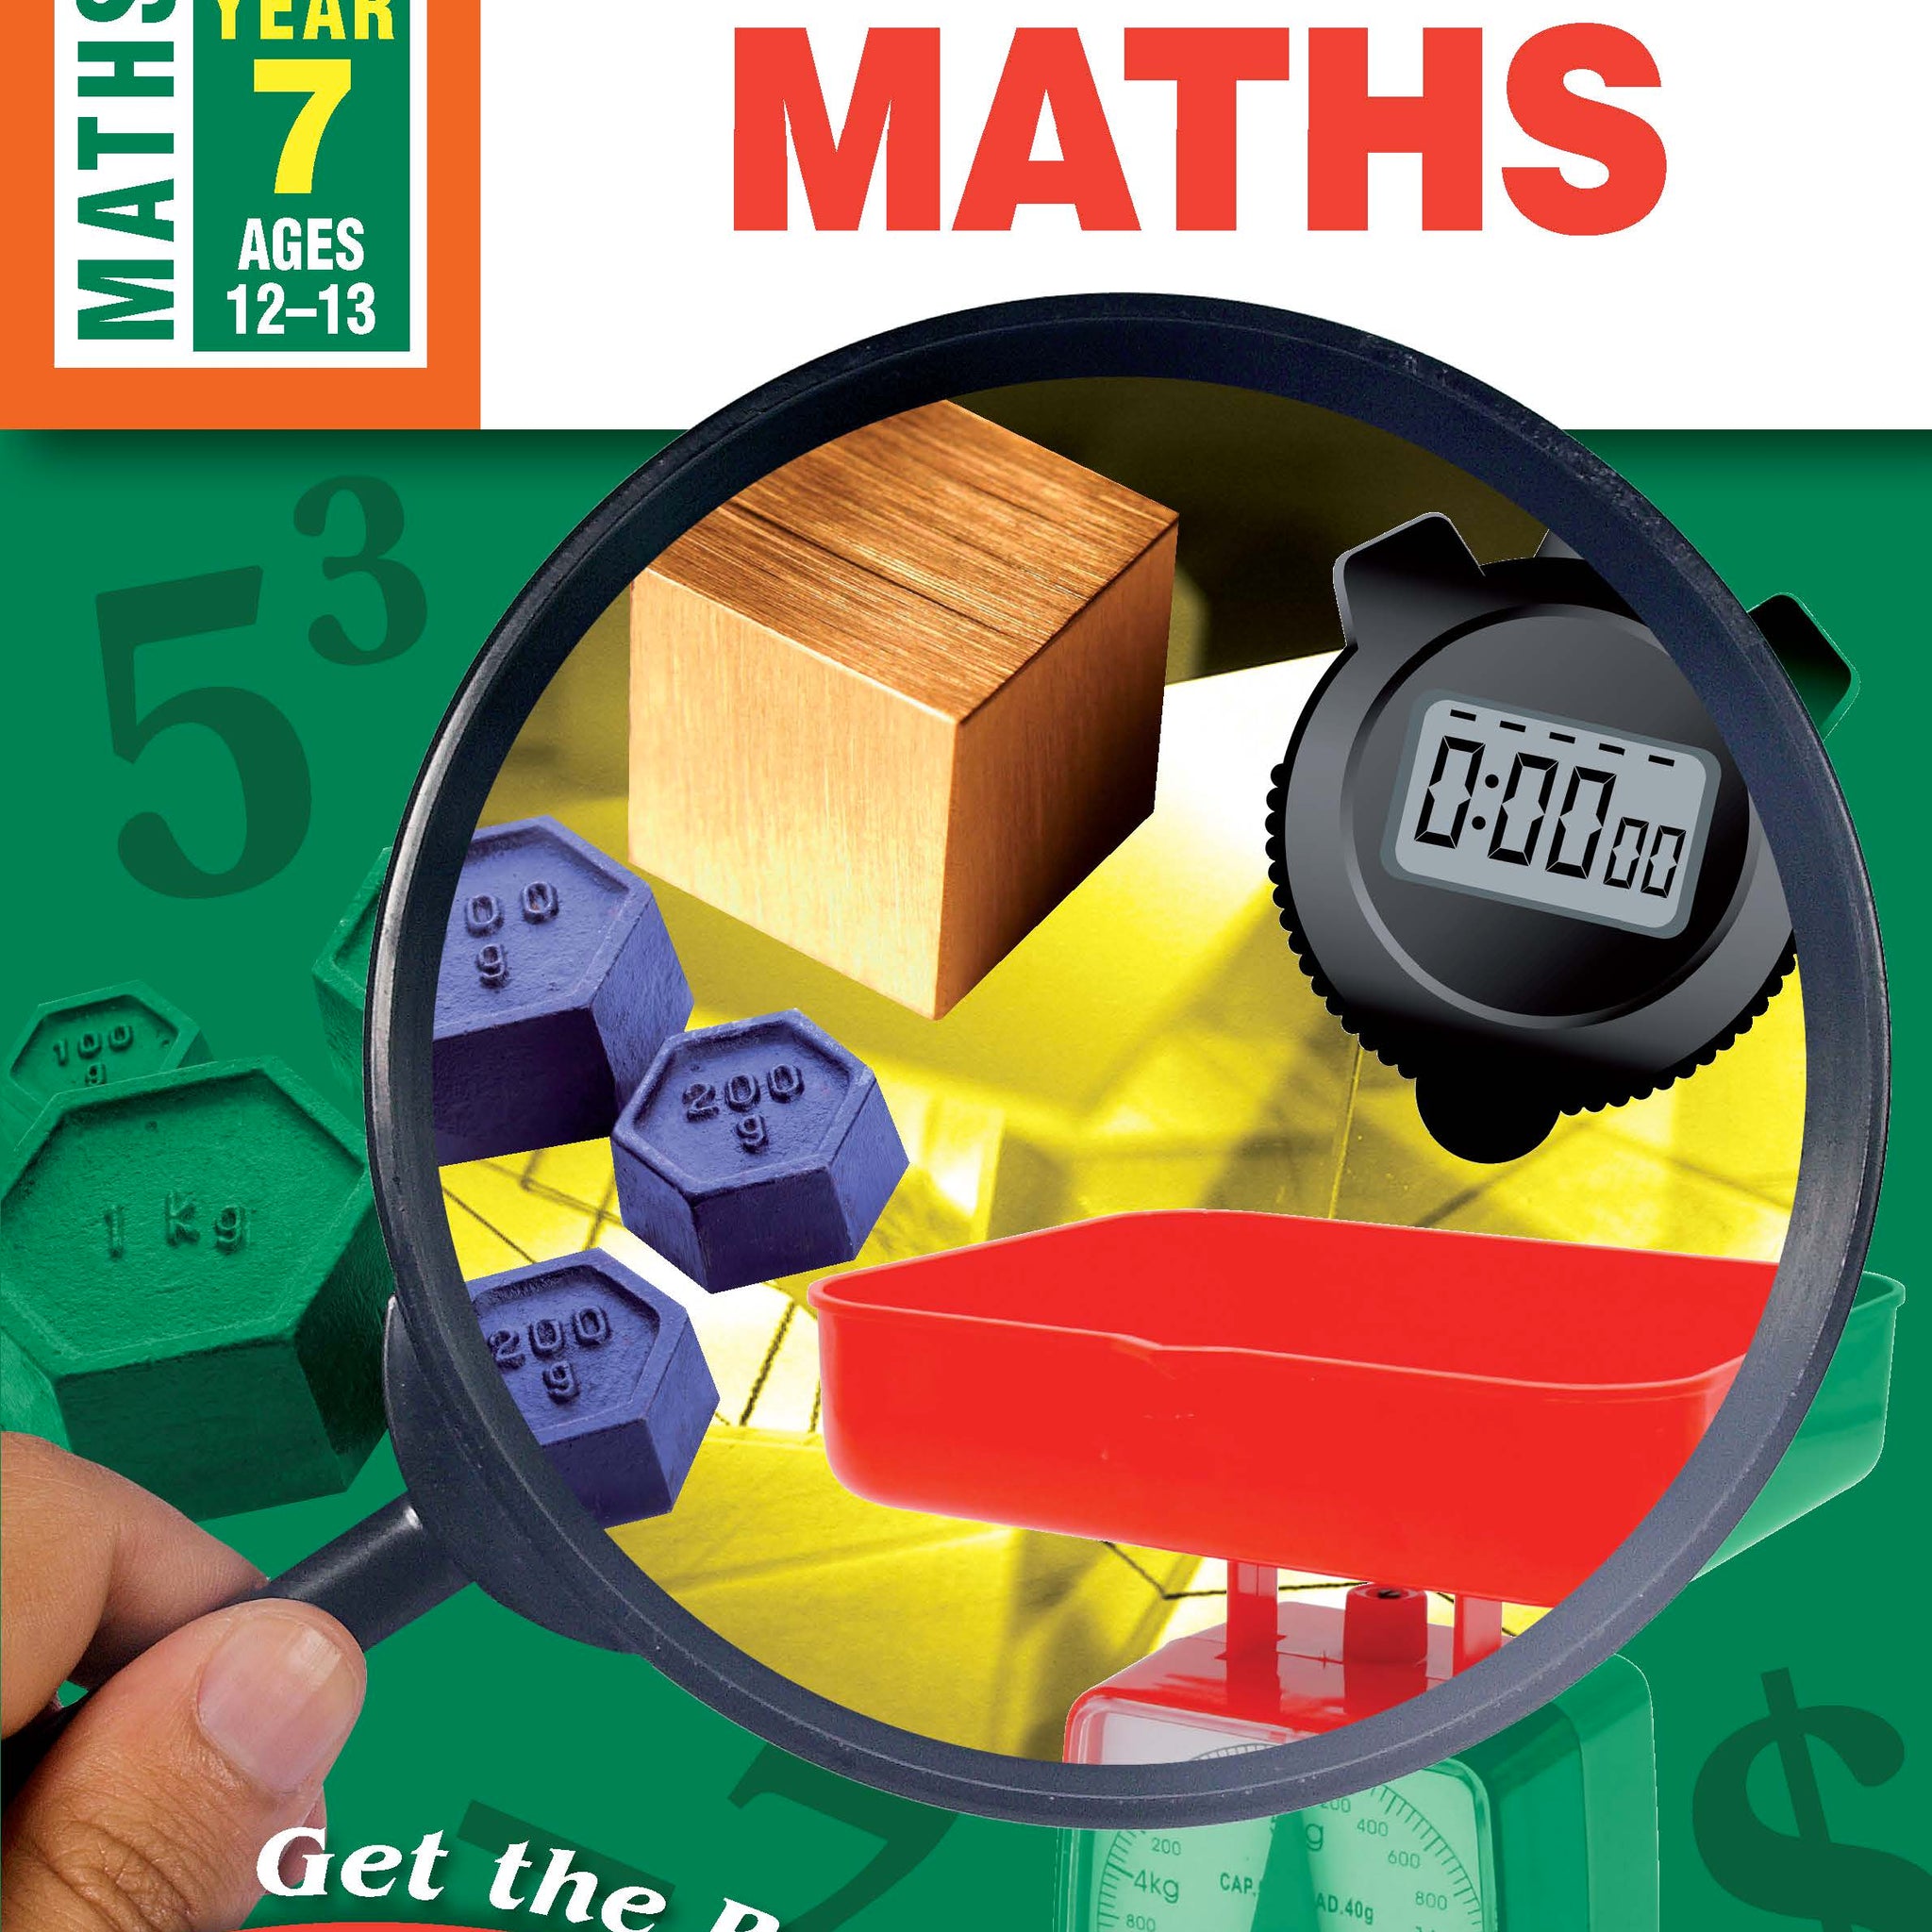 Excel Advanced Skills Workbook: Start Up Maths Year 7